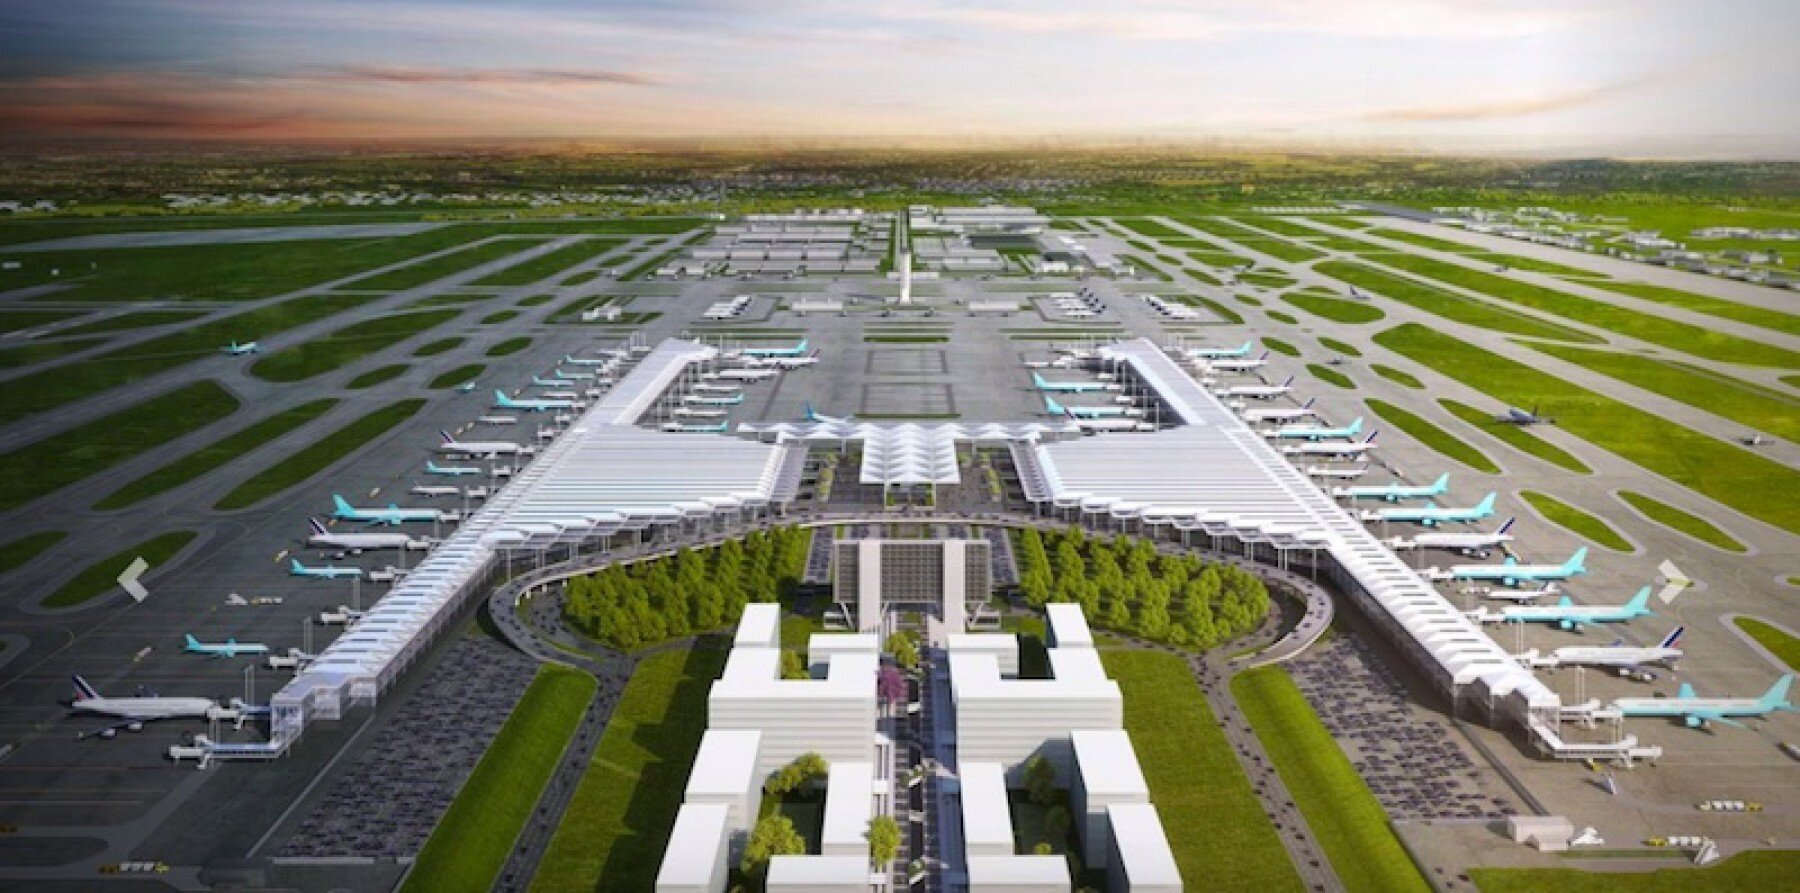 Aeropuerto de Santa Lucía lleva un 55% de avance en la construcción :  Inmobiliare